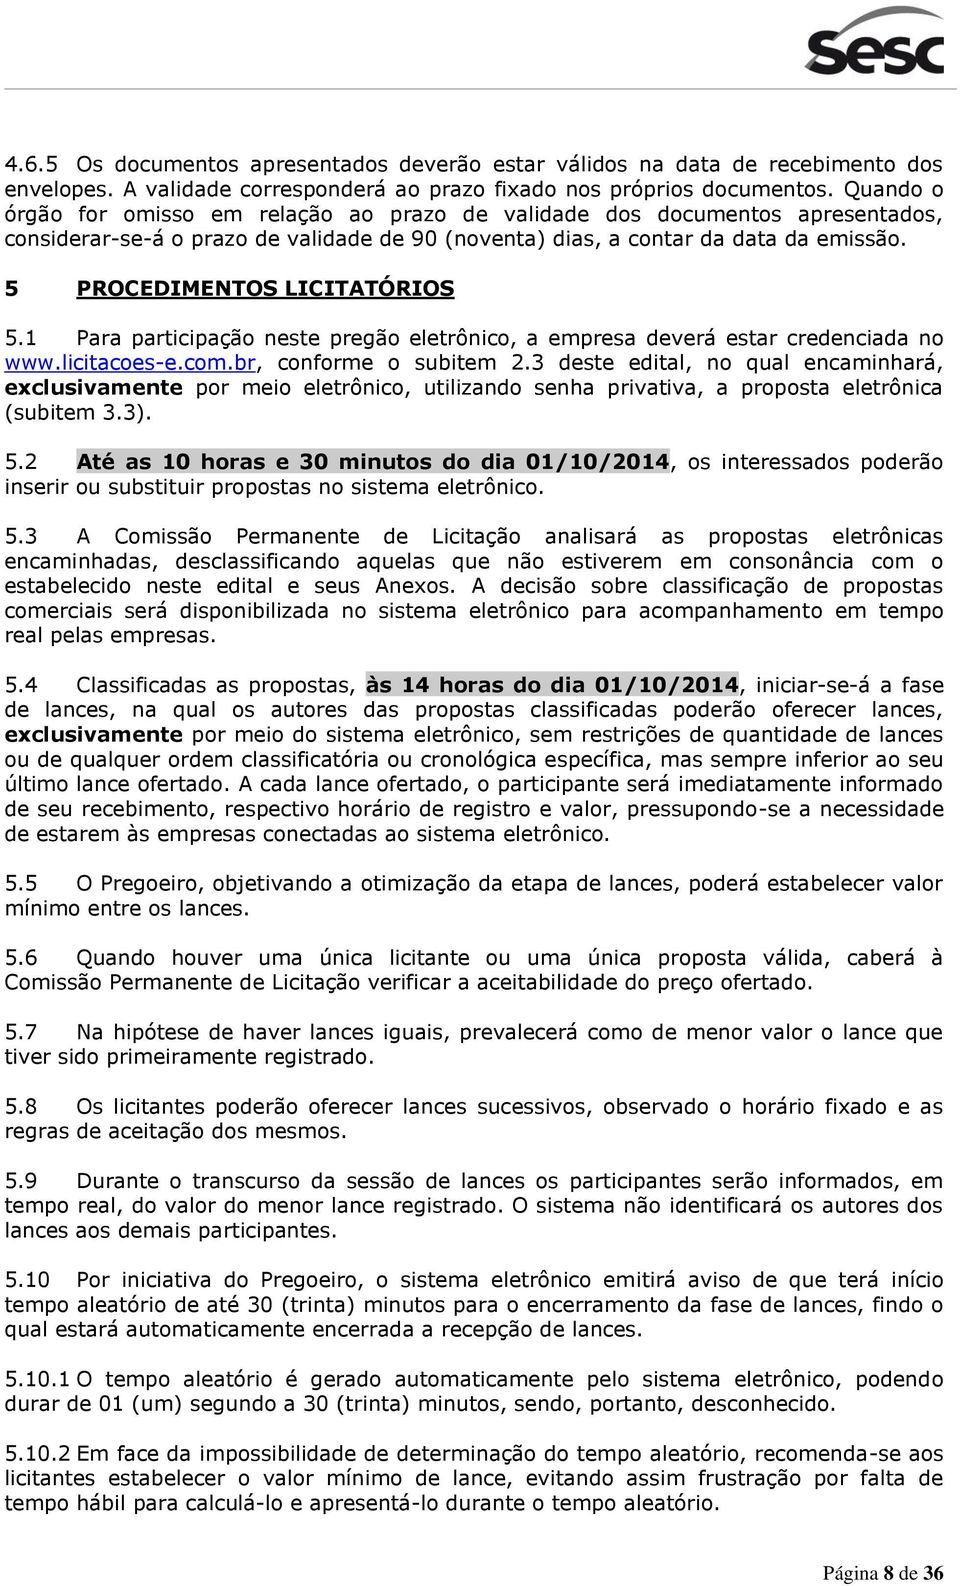 5 PROCEDIMENTOS LICITATÓRIOS 5.1 Para participação neste pregão eletrônico, a empresa deverá estar credenciada no www.licitacoes-e.com.br, conforme o subitem 2.